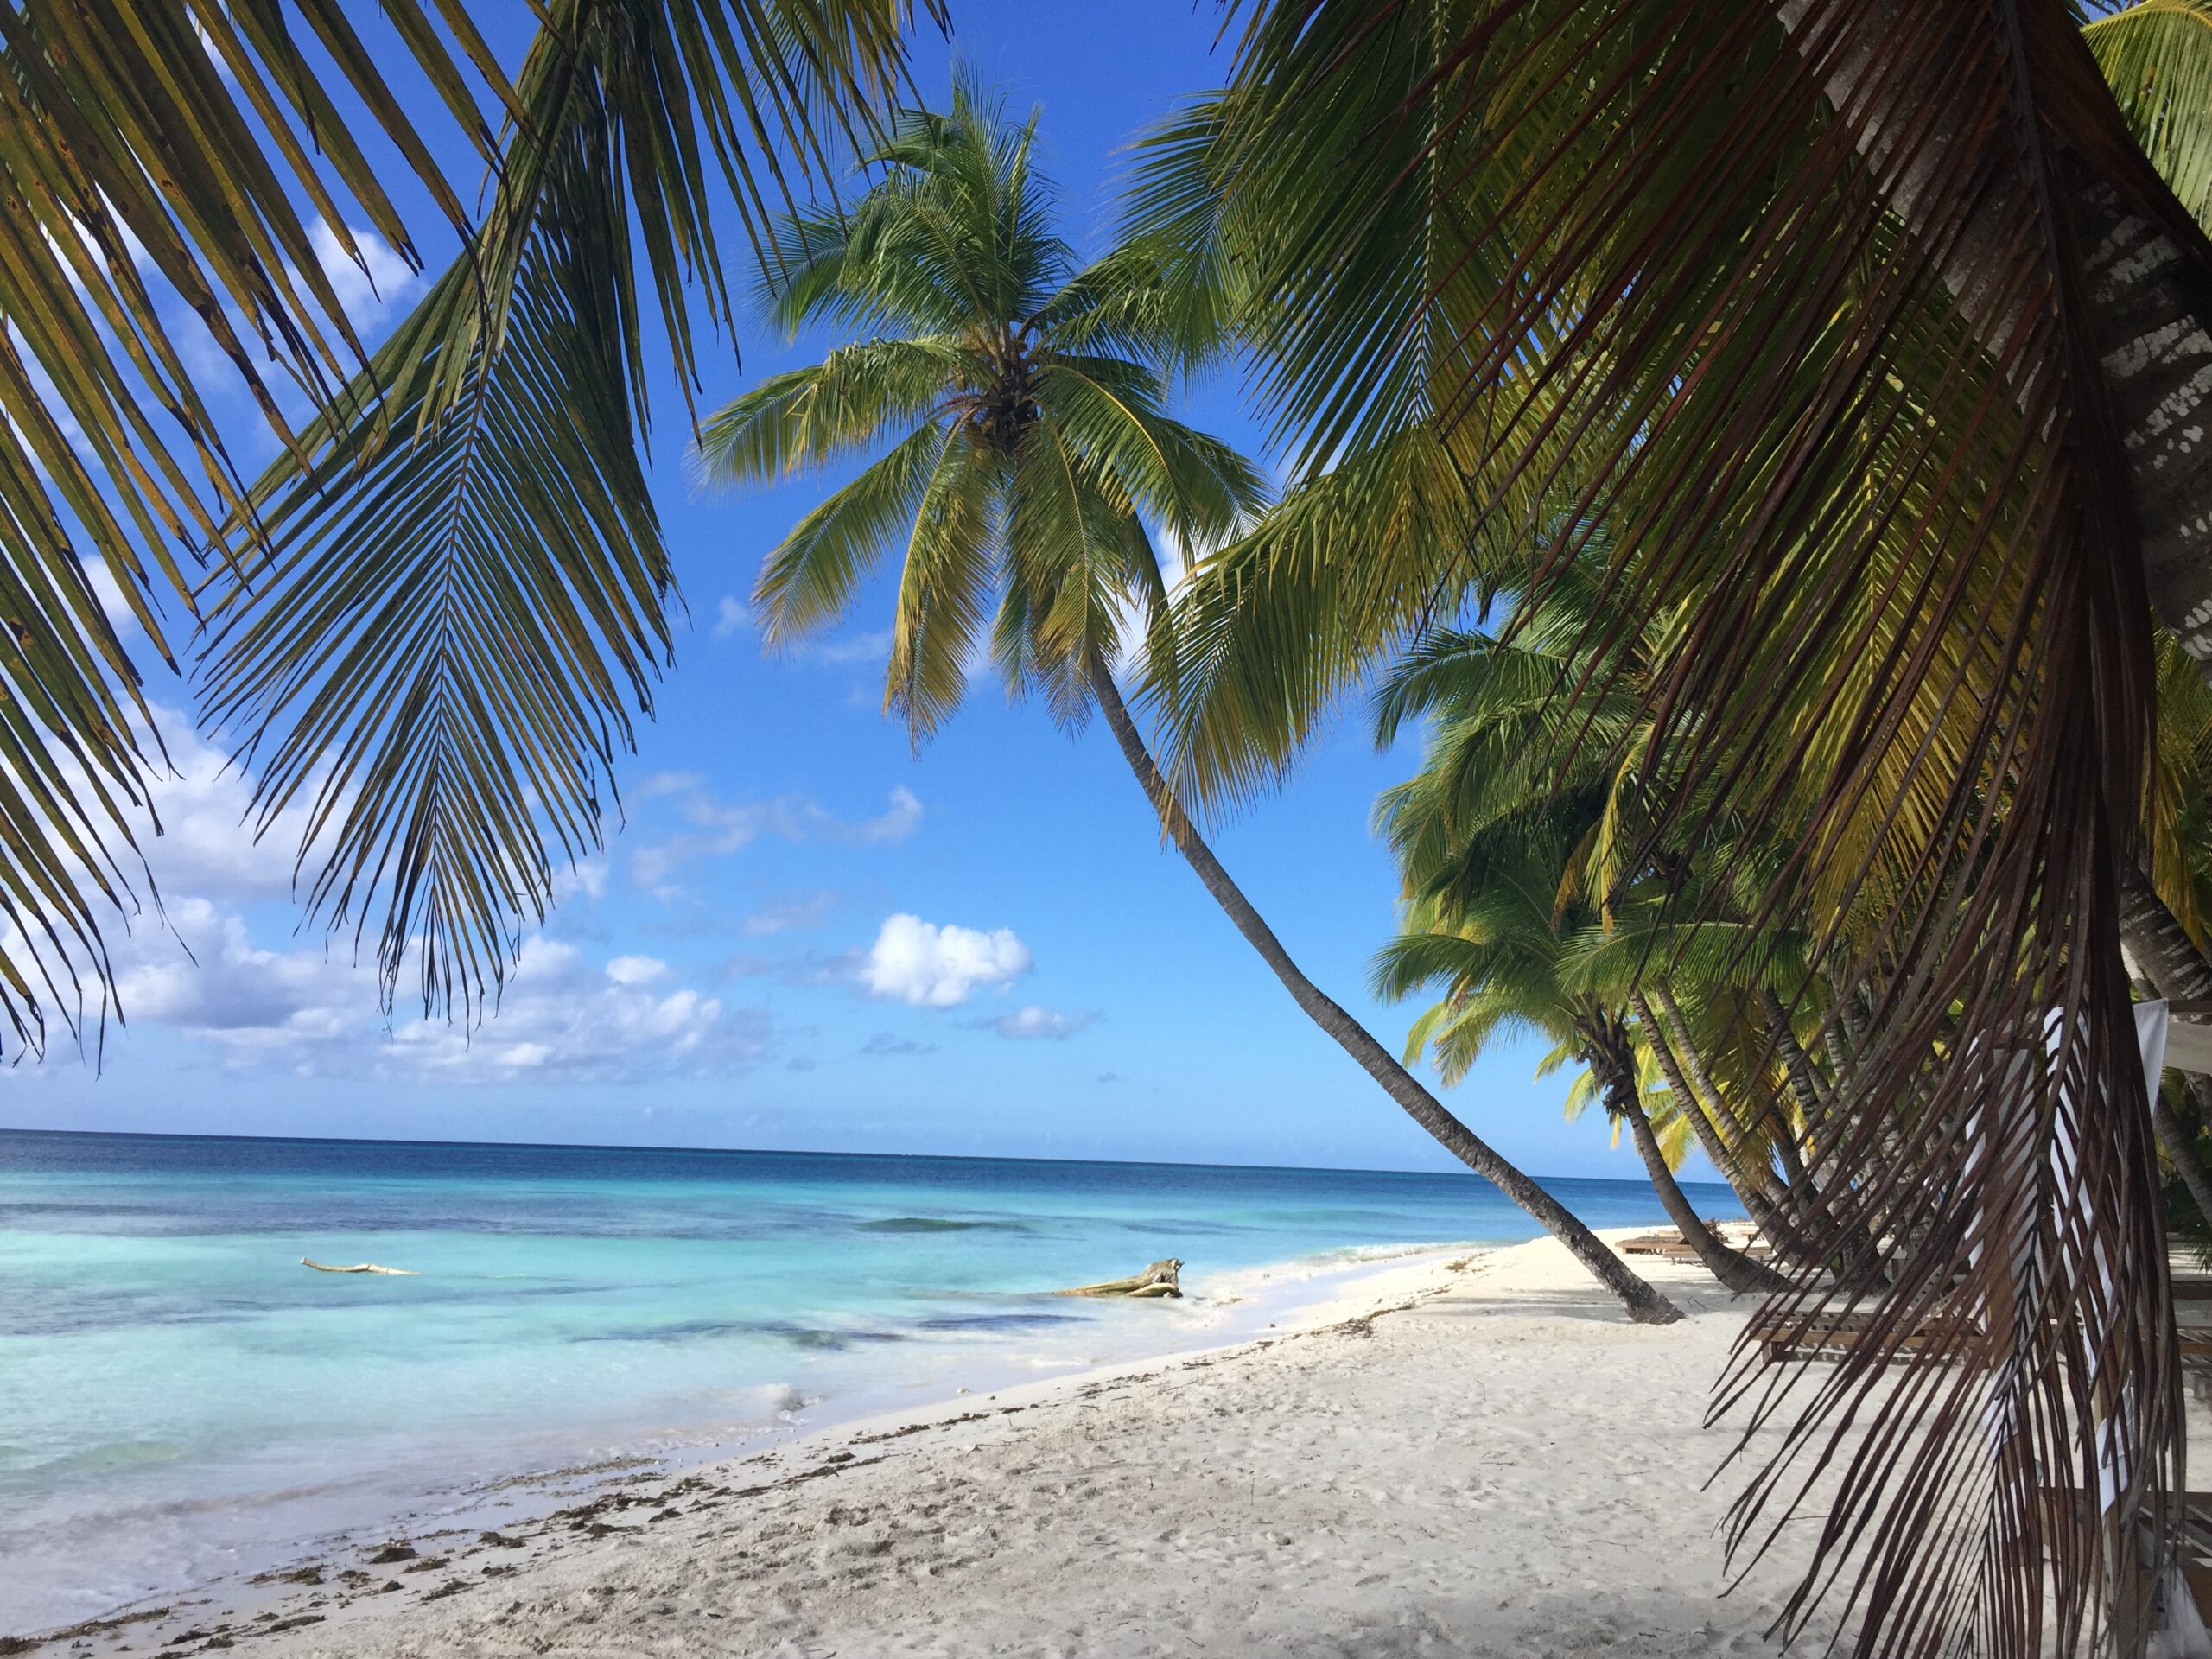 Saona eiland laat je wegdromen op witte stranden, blauwe wateren en prachtige palmbomen